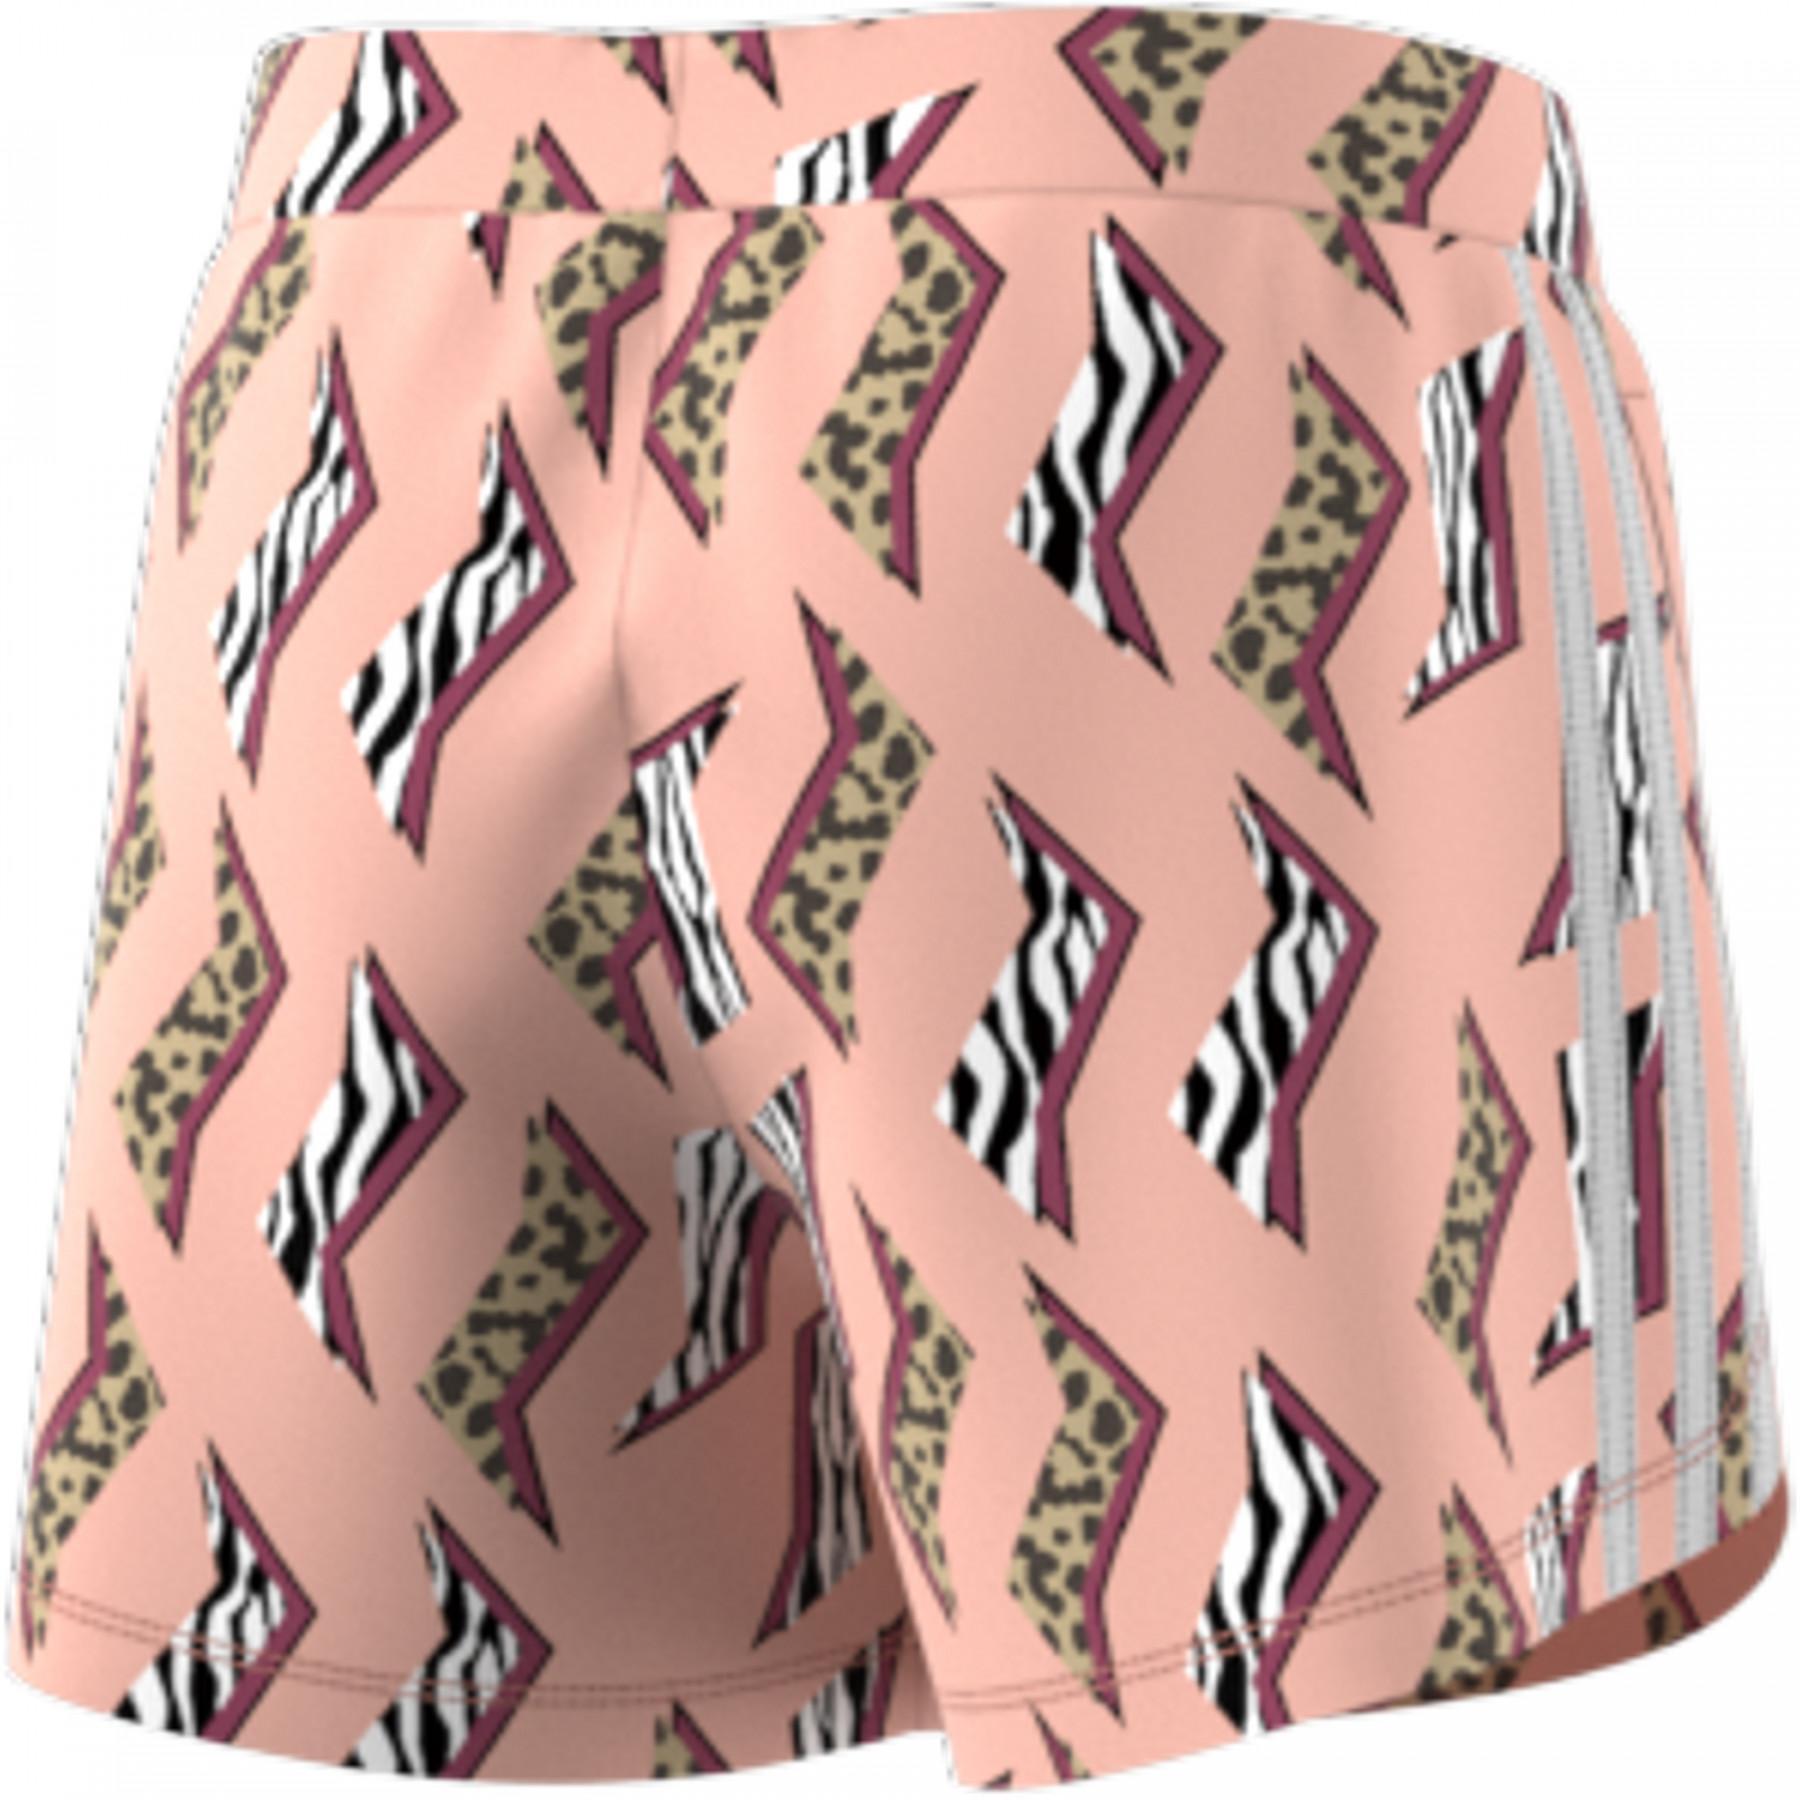 Shorts für Mädchen adidas Originals All-over Prints